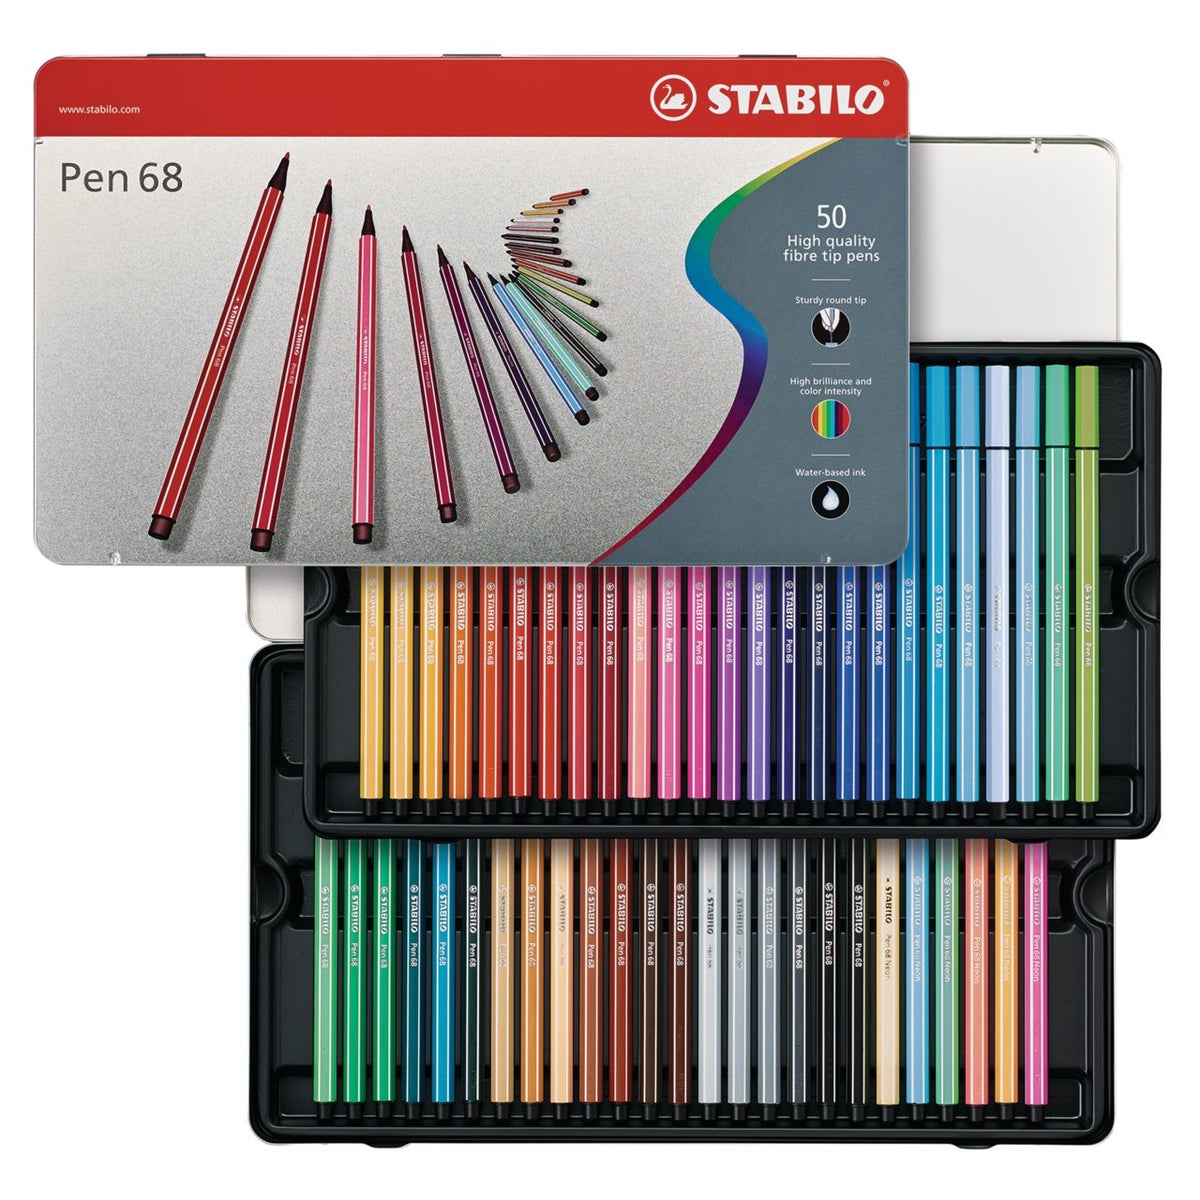 Stabilo Pen 68 Wallet Set of 30